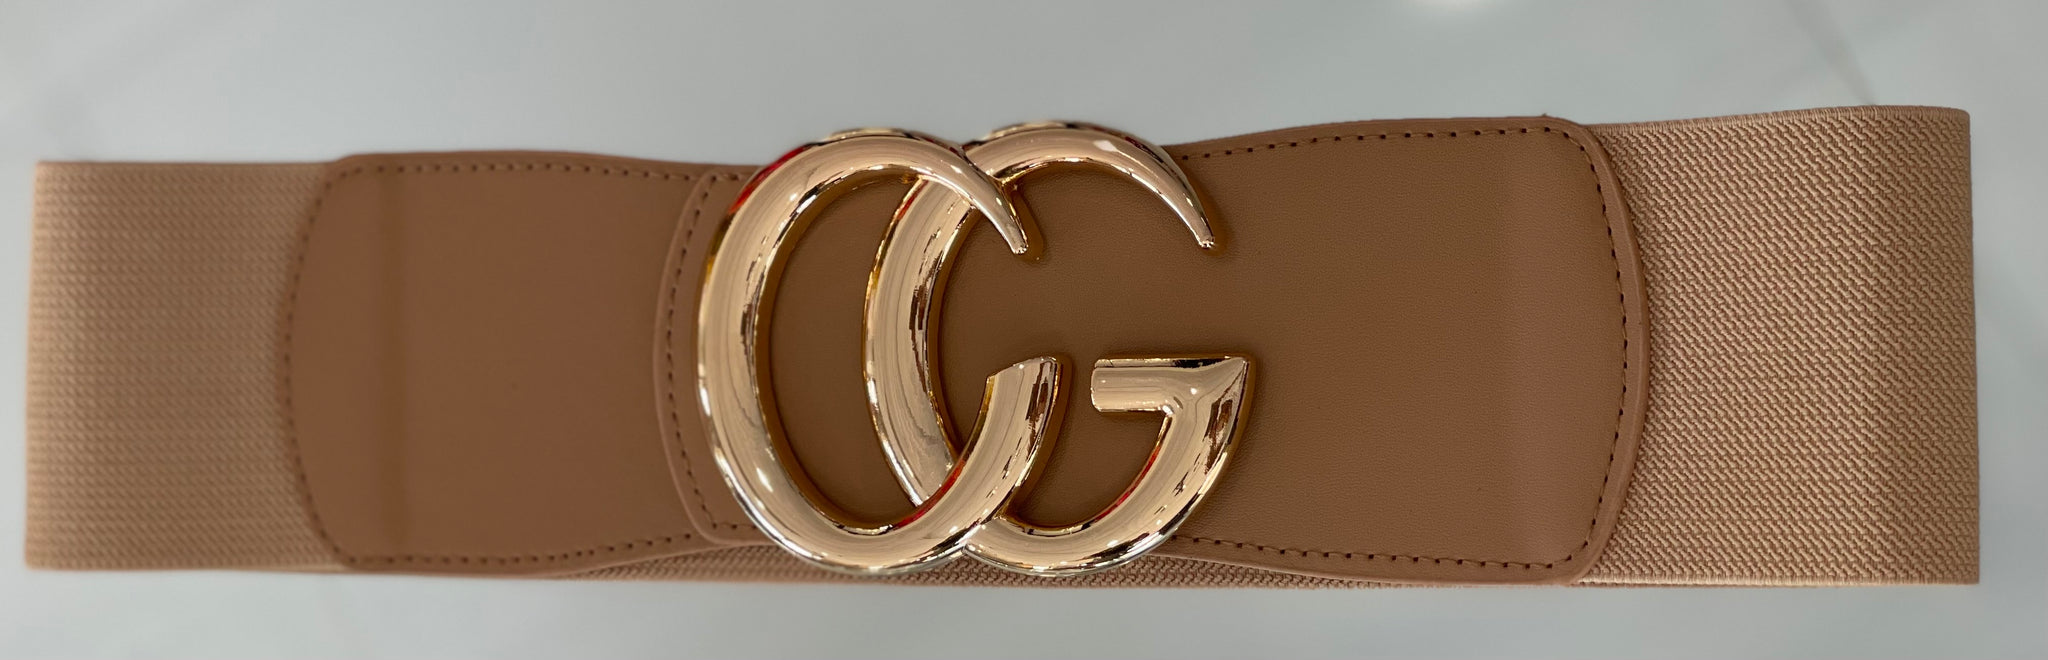 Gucci Bandage Belt